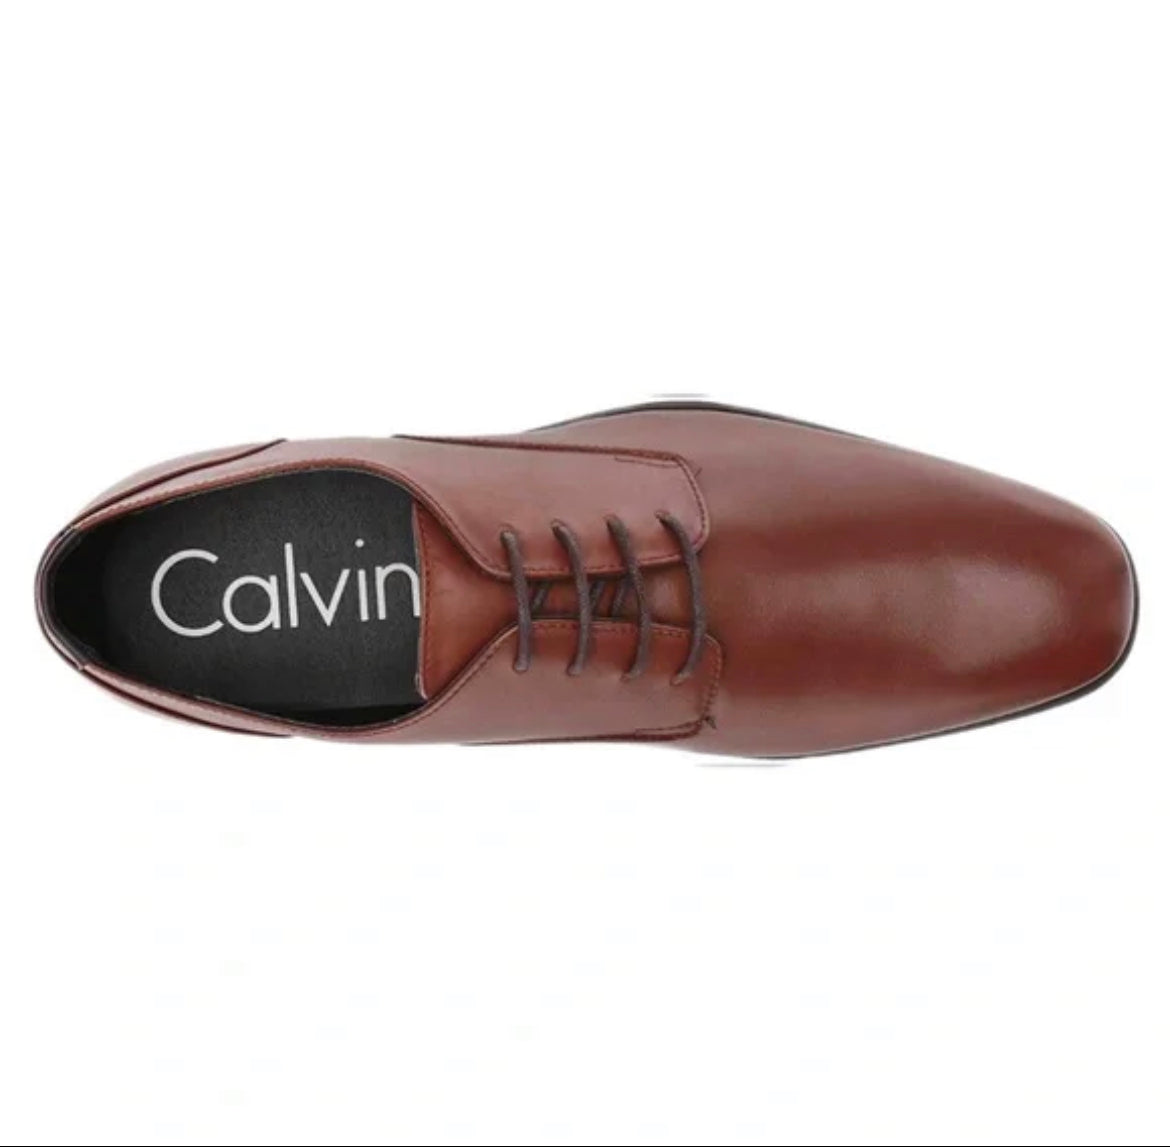 Calvin Klein shoes for men